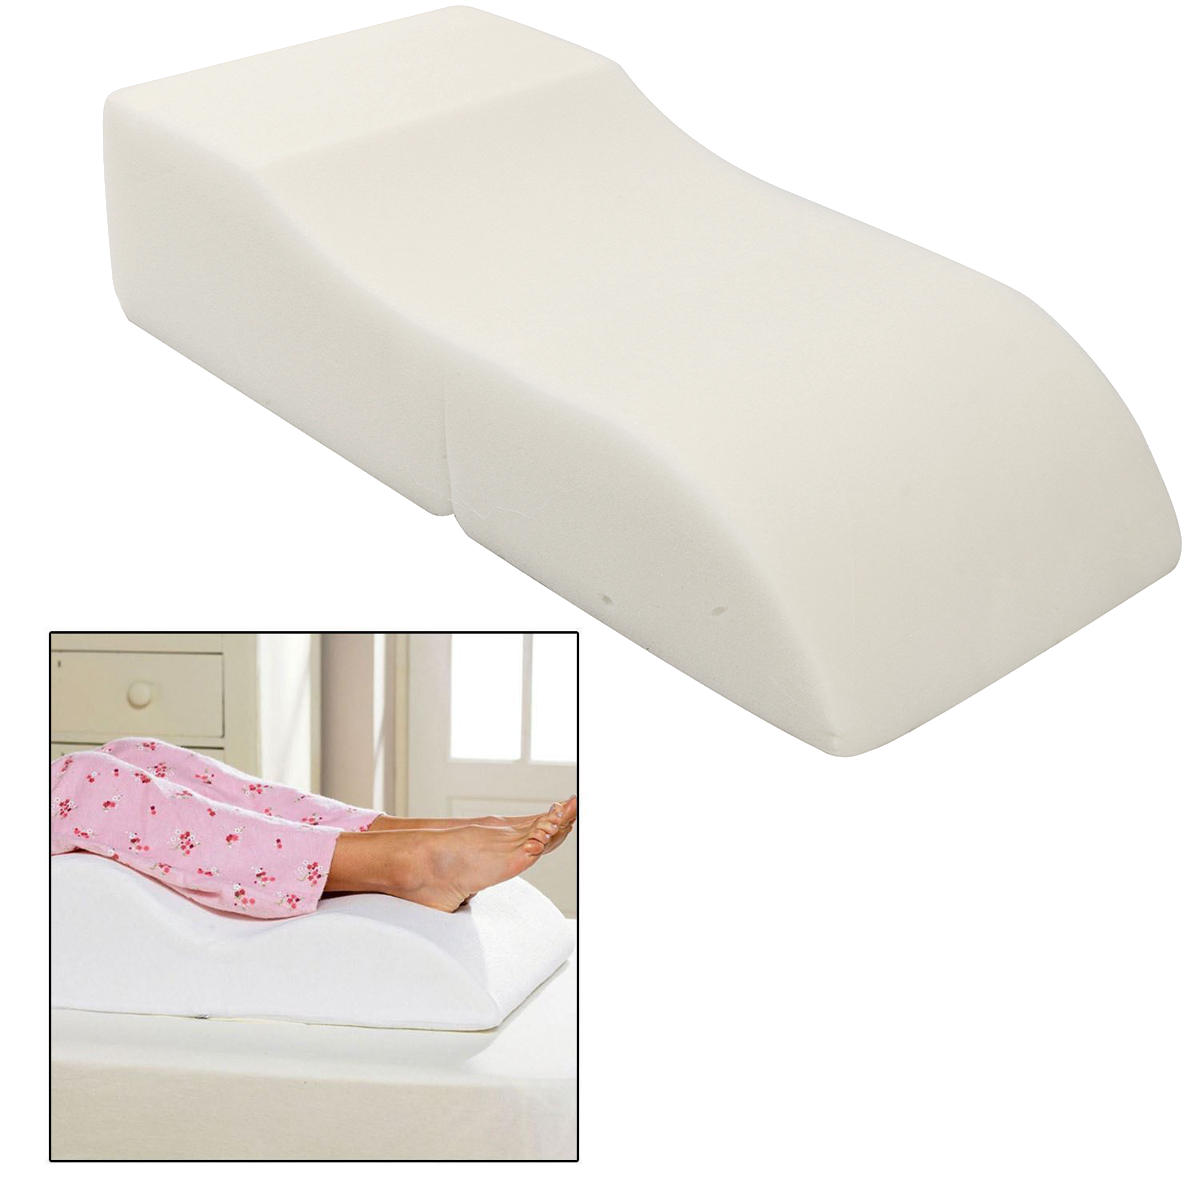 

Leg Foot Rest Raiser Support Pillow Cushion Leg Support Pill